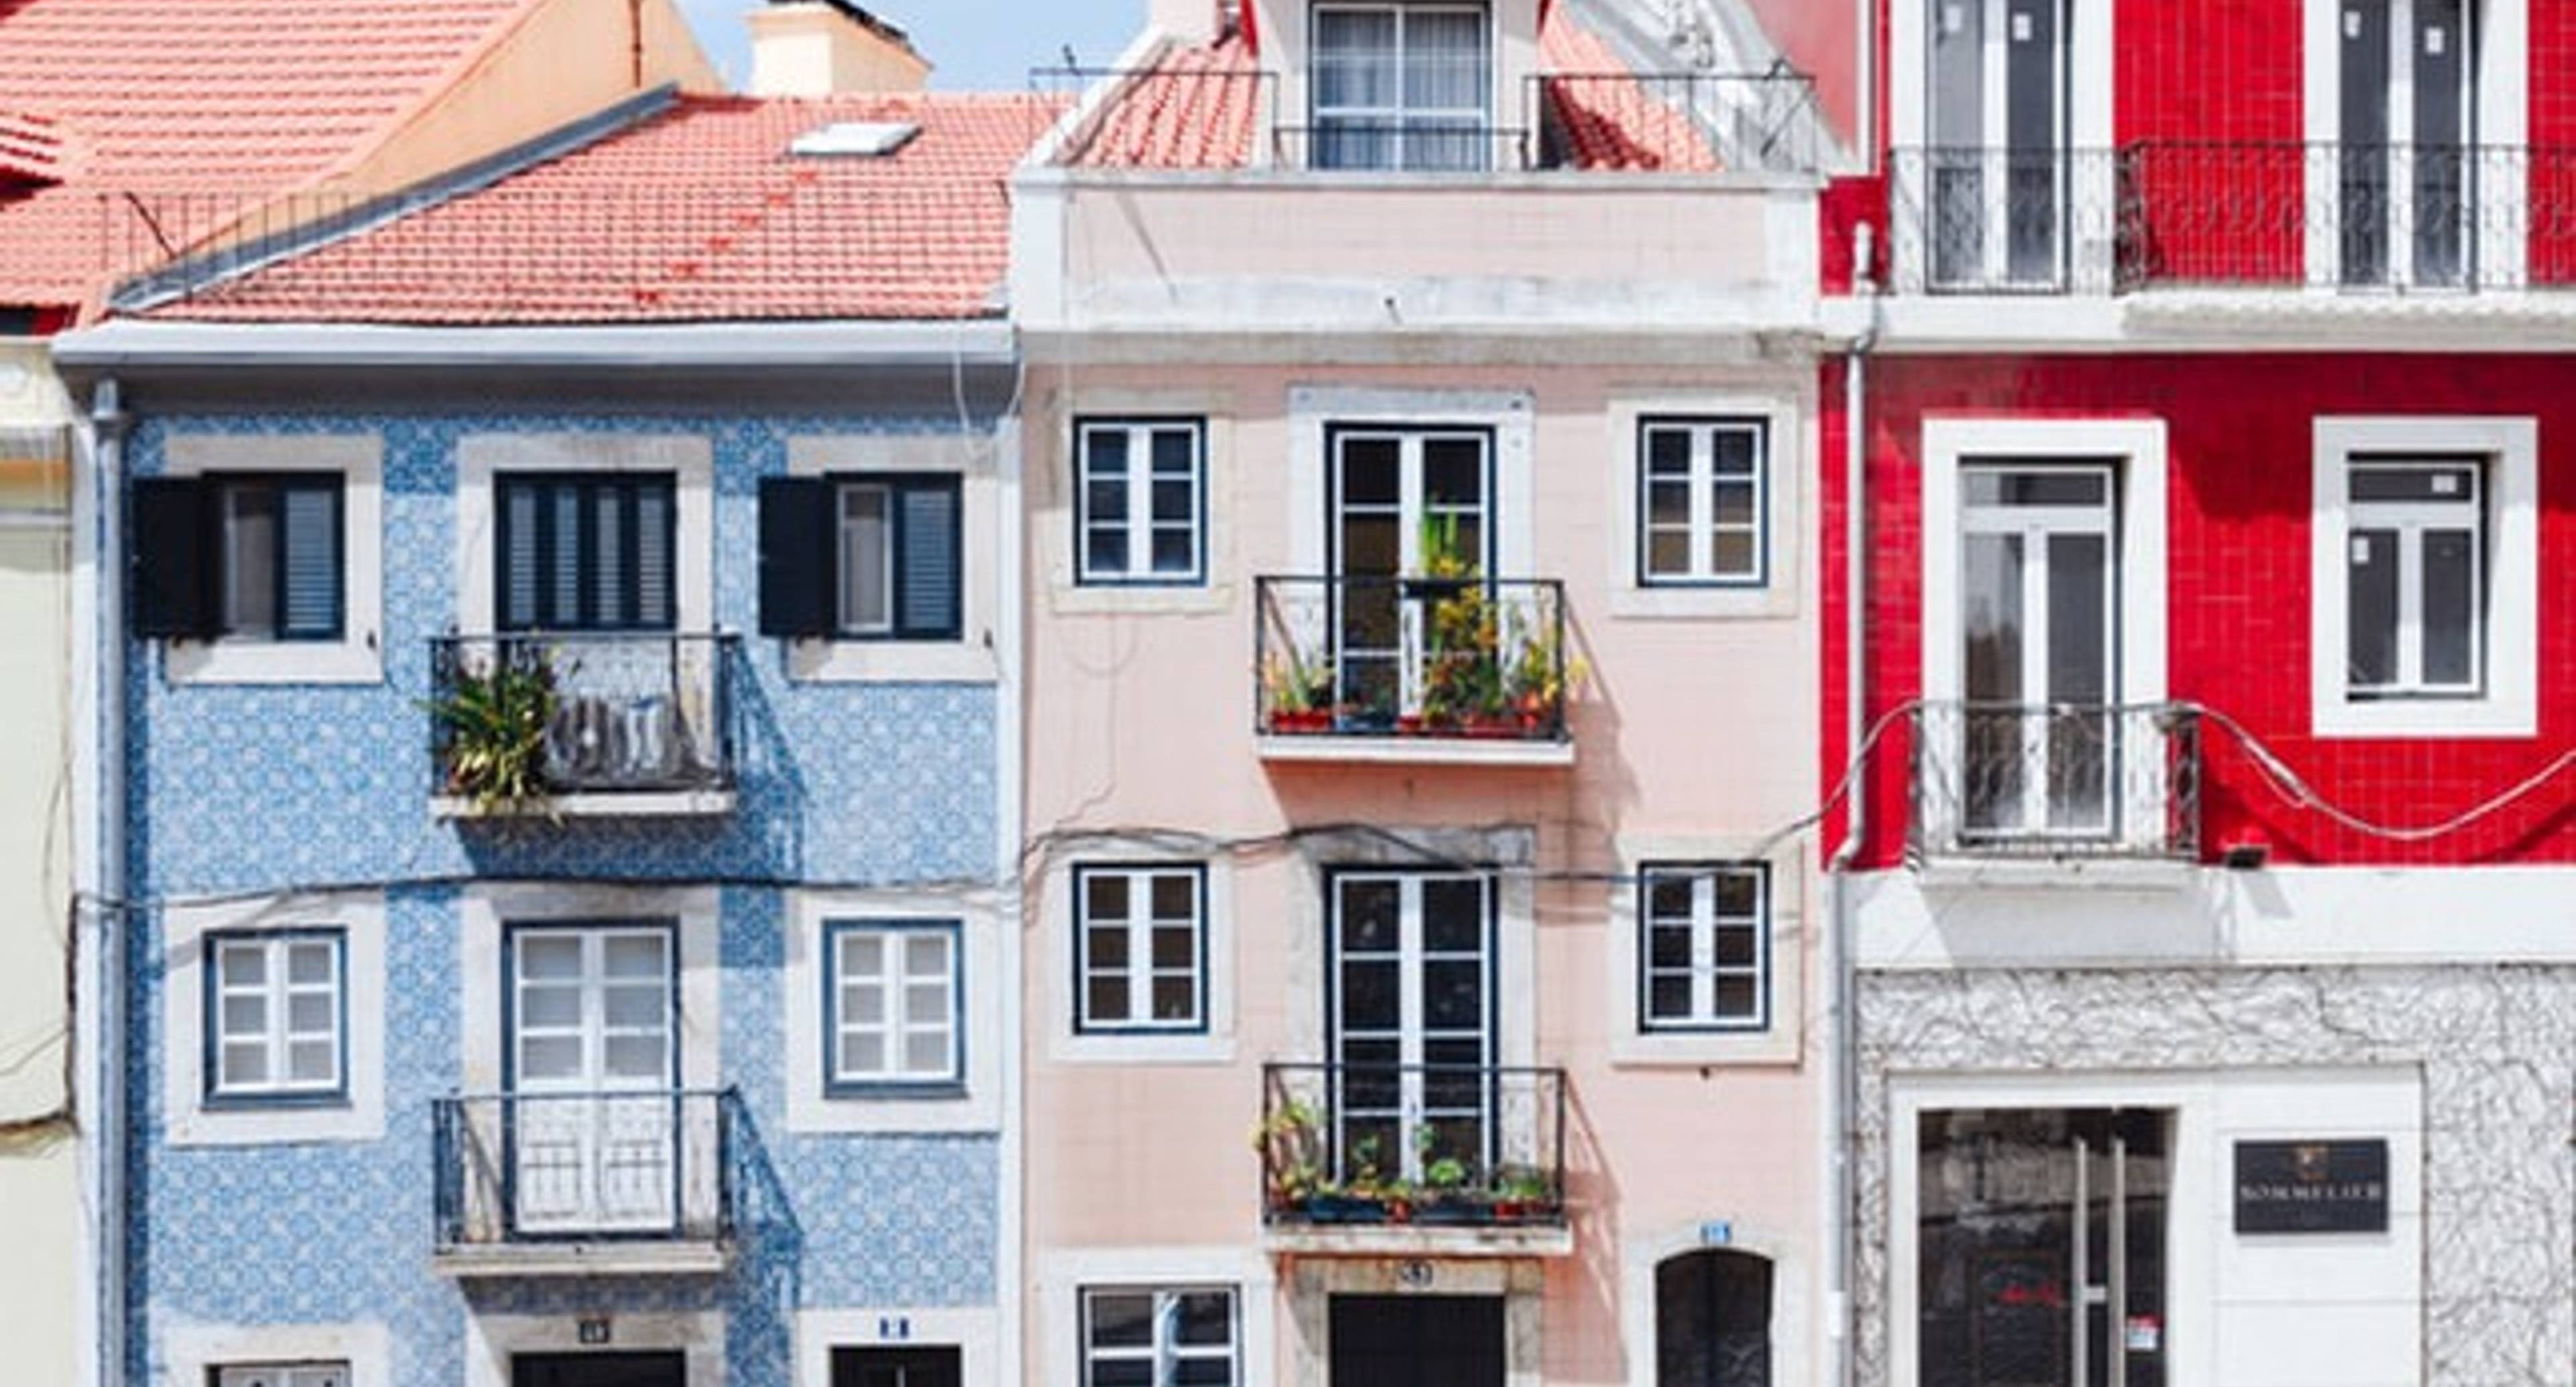 Il fascino dell'architettura di Lisbona